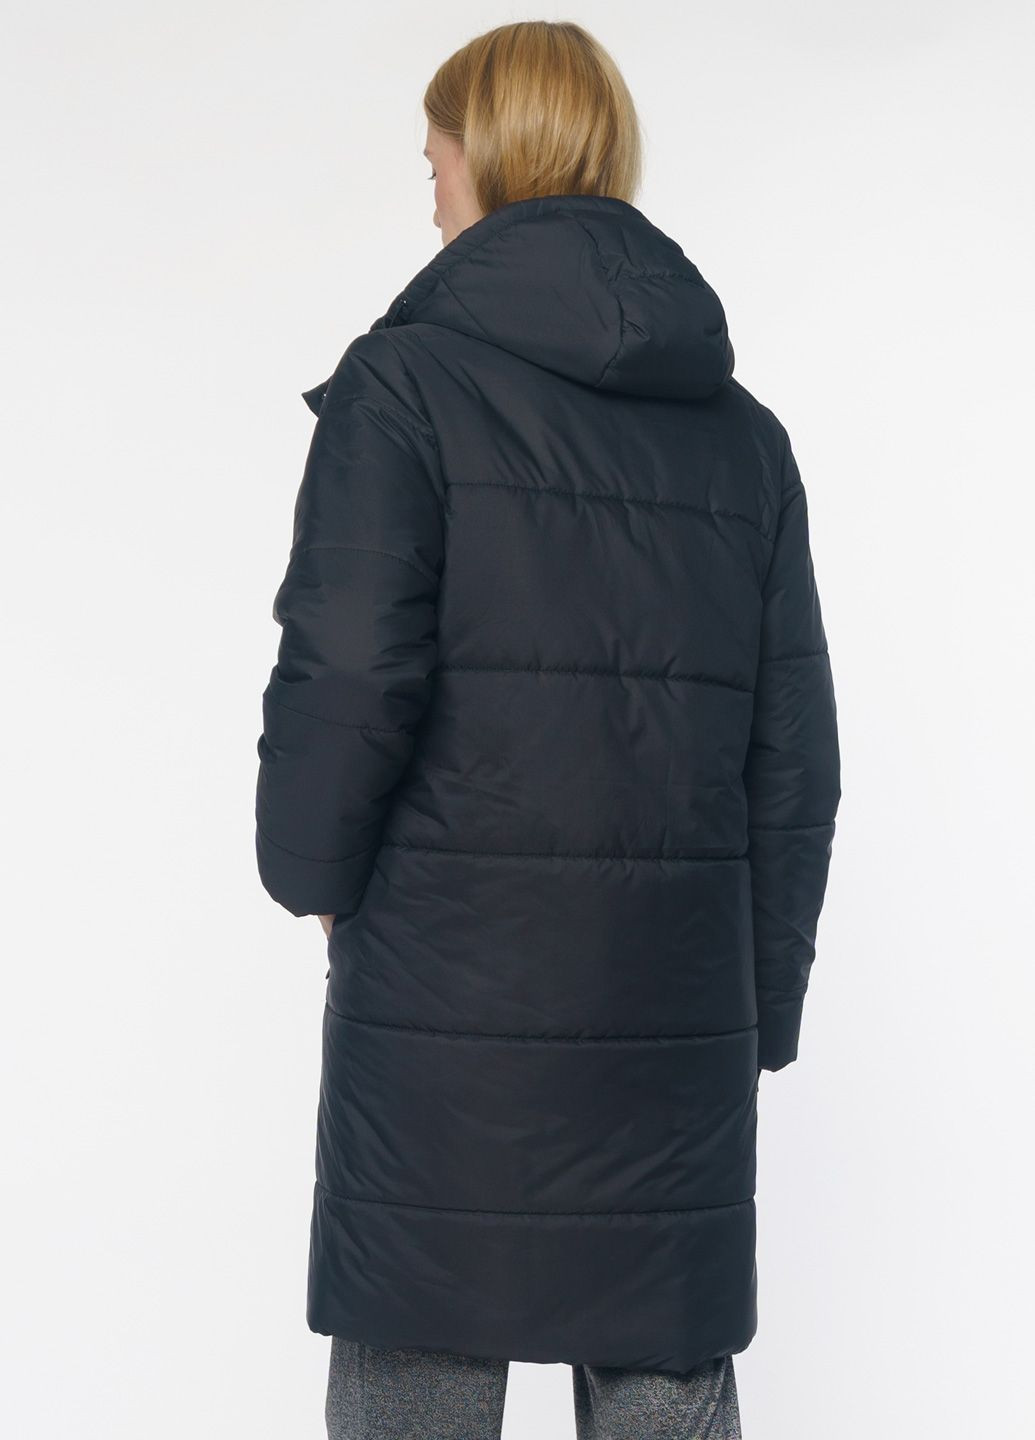 Черная зимняя куртка женская черная Arber Erika